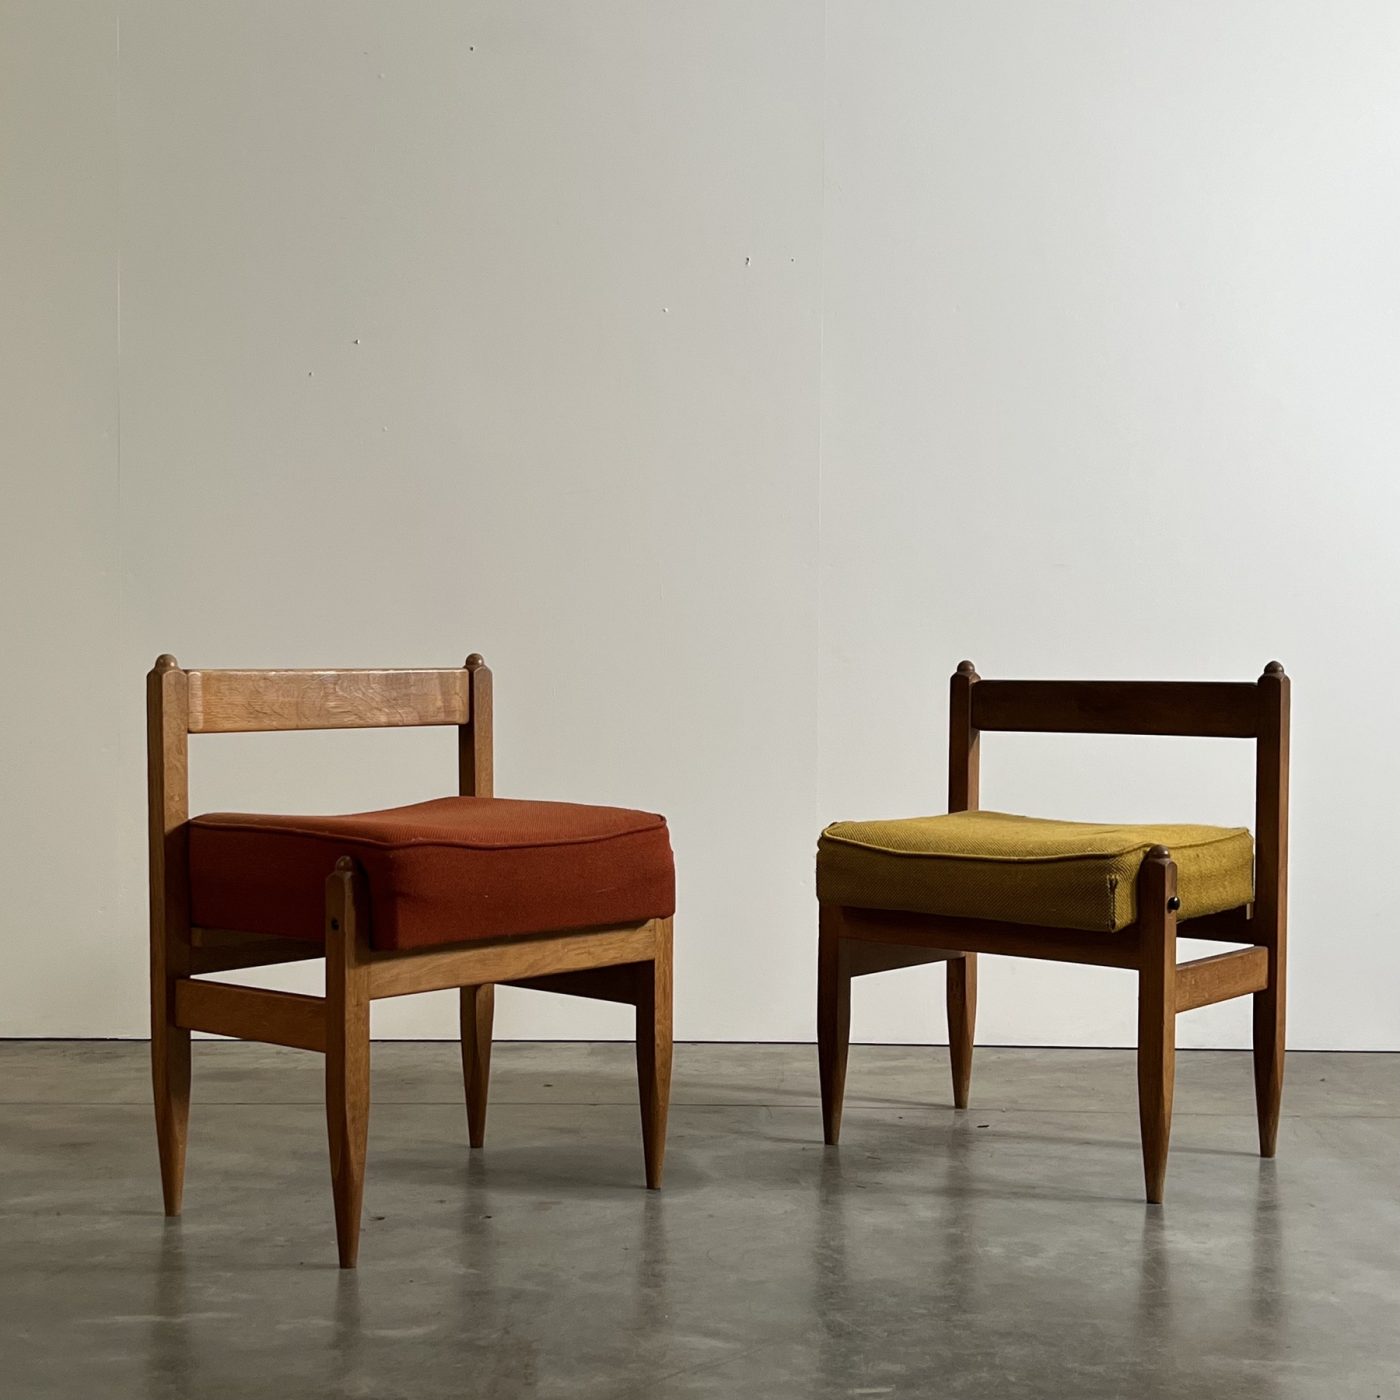 objet-vagabond-guillerme-stools0000